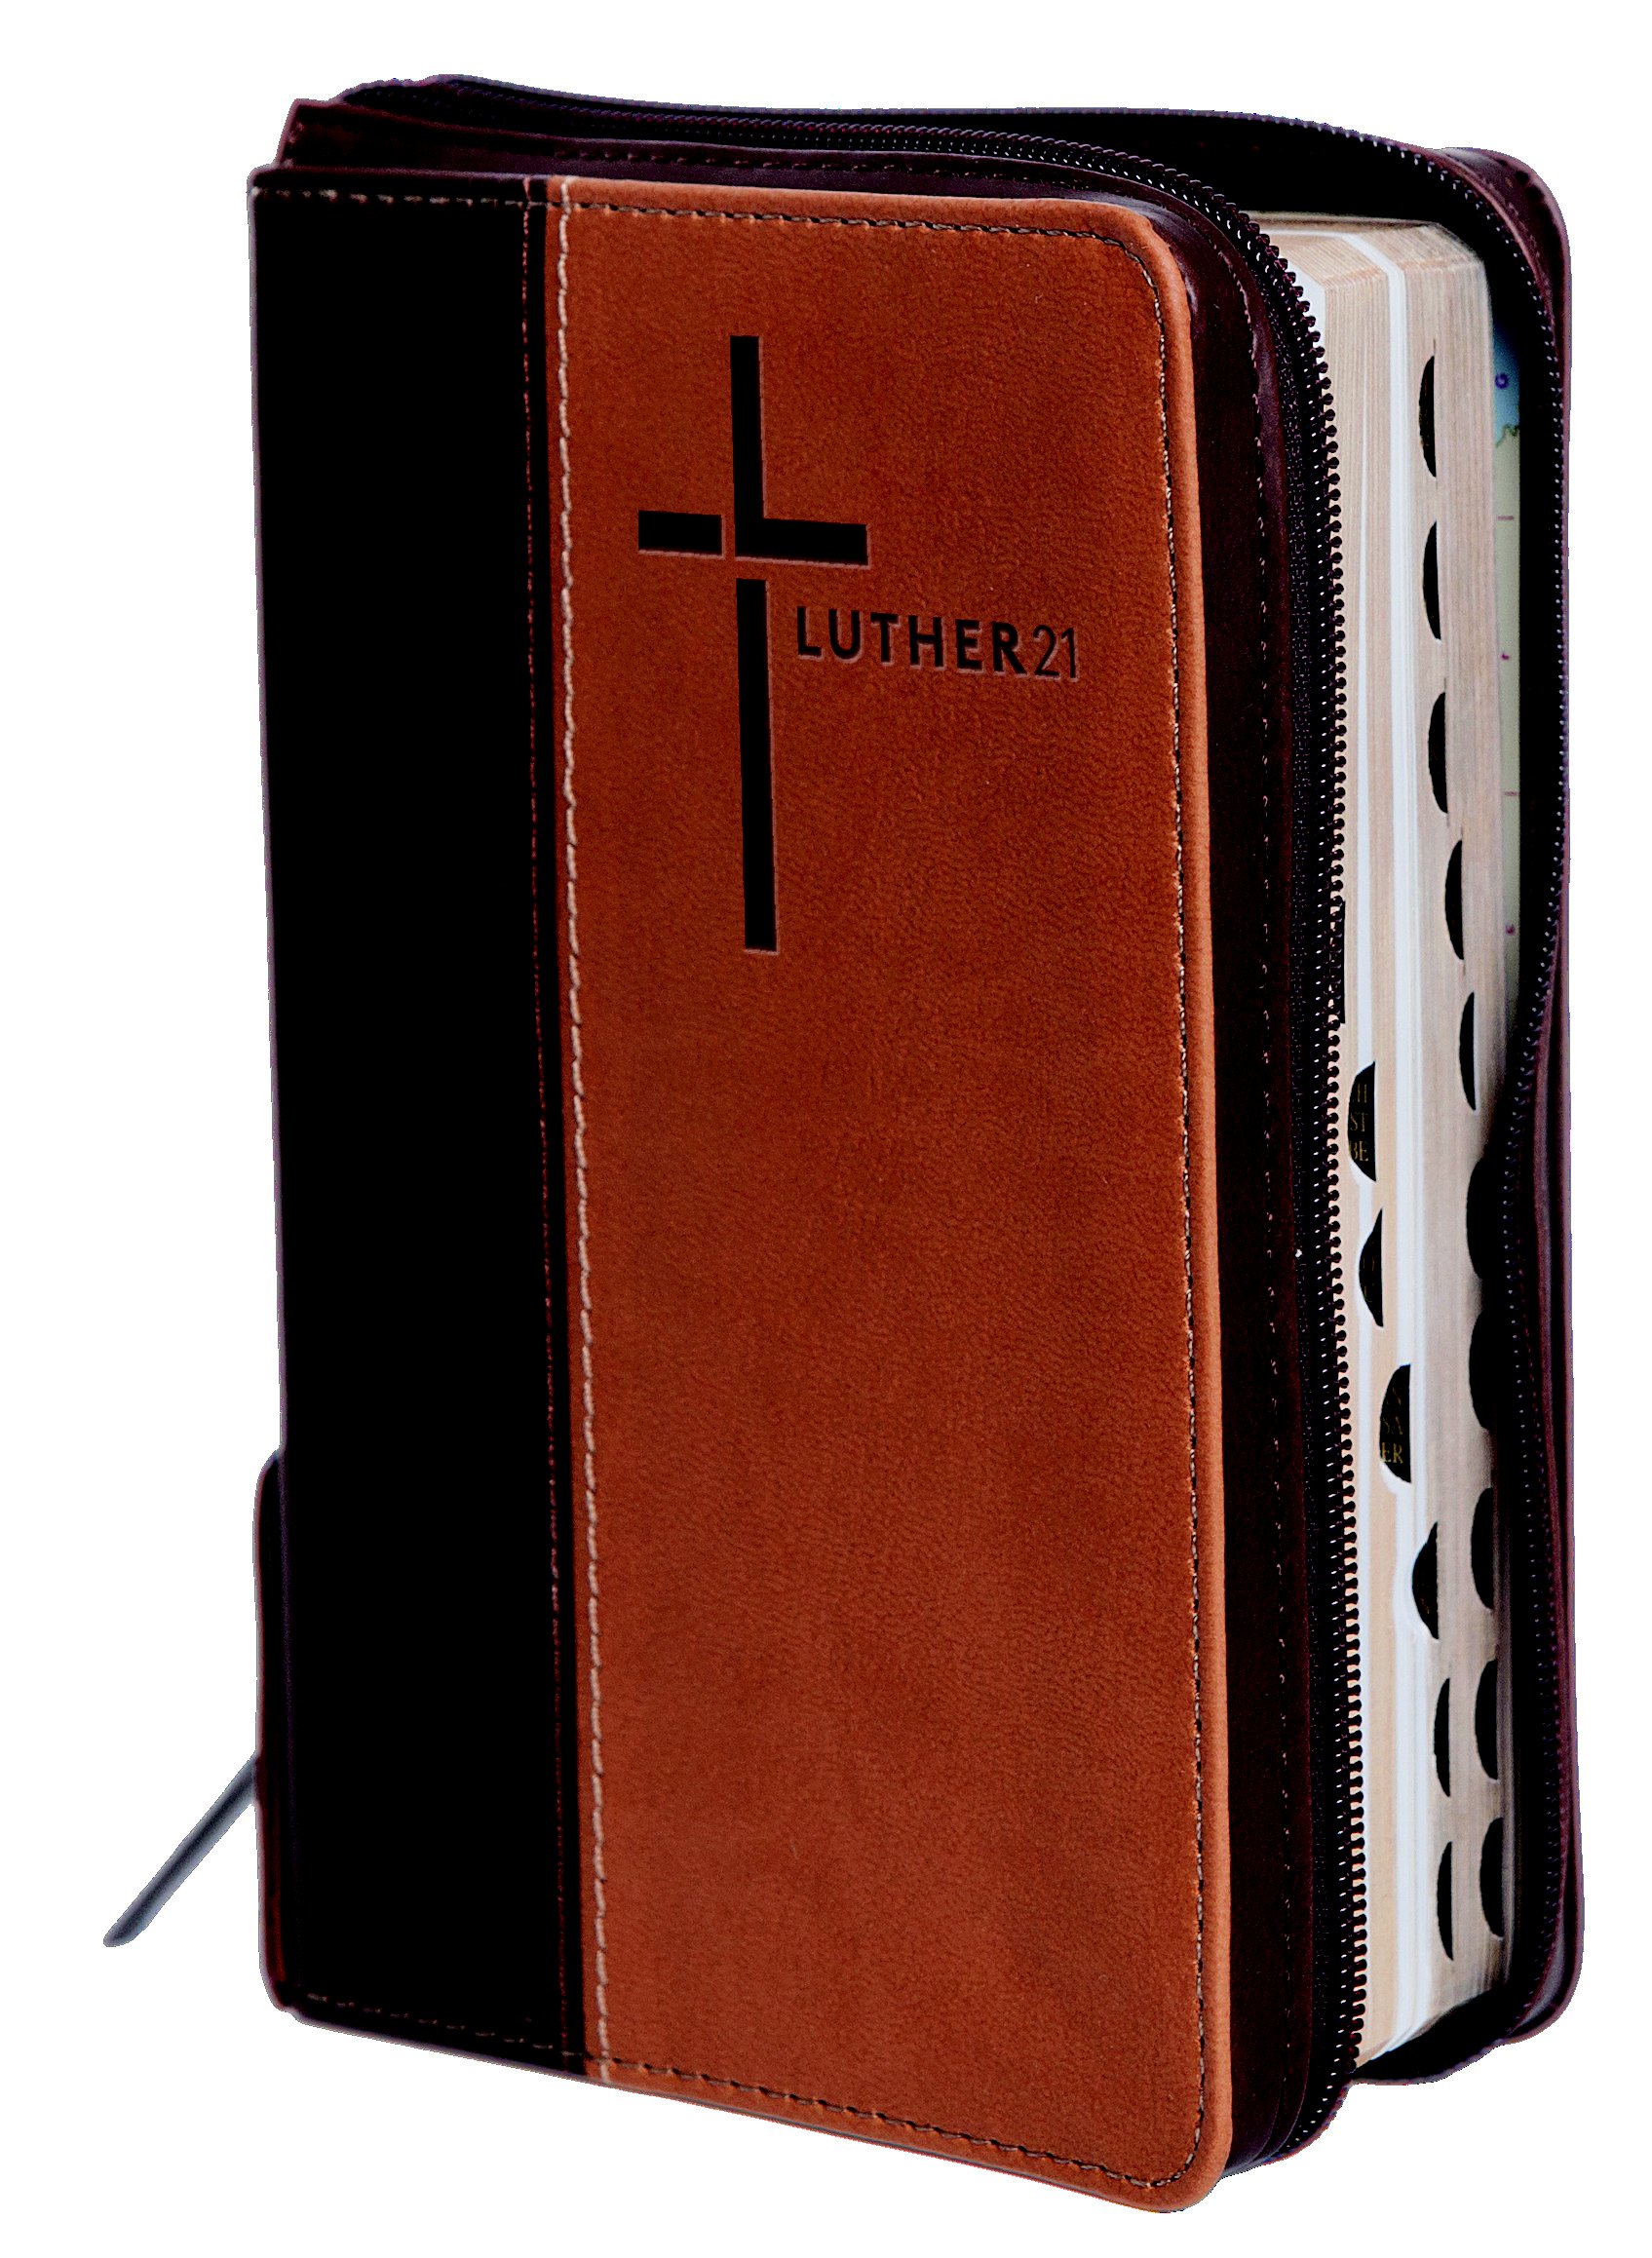 Luther21 - Taschenausgabe - Kunstleder Cowboy - Braun/Beige